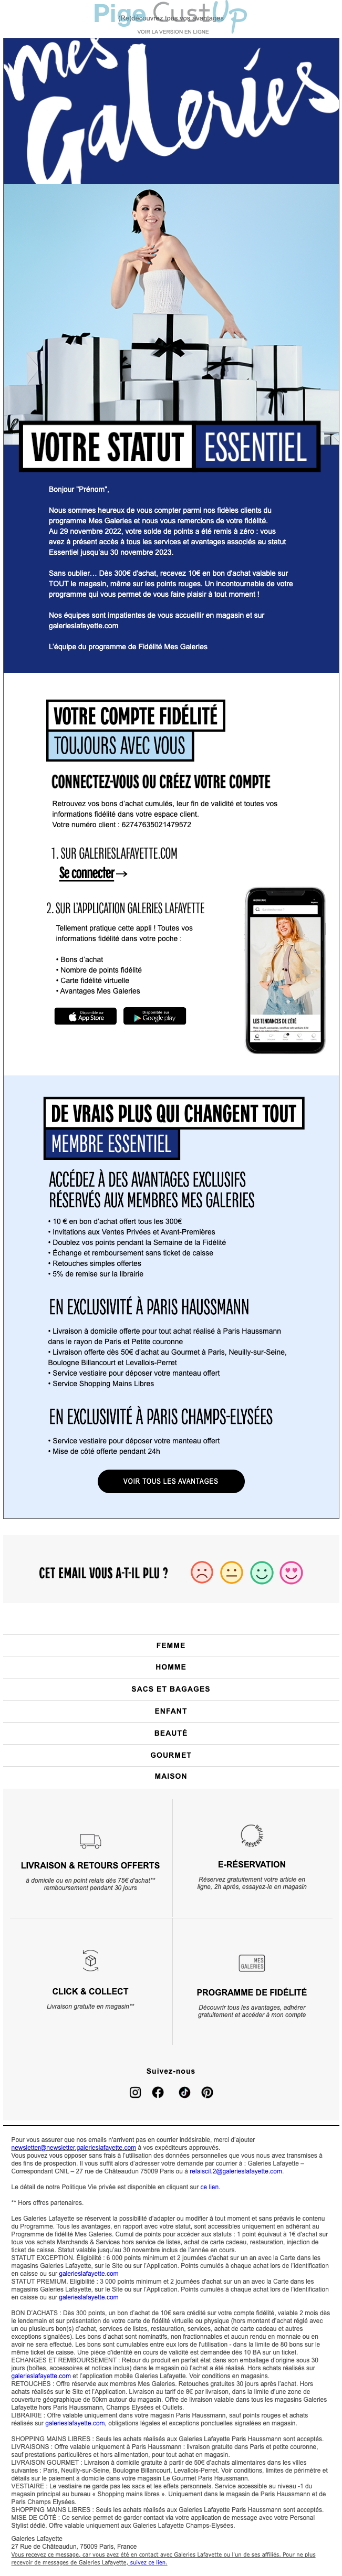 Exemple de Type de media  e-mailing - Galeries Lafayette - Marketing fidélisation - Points et statut